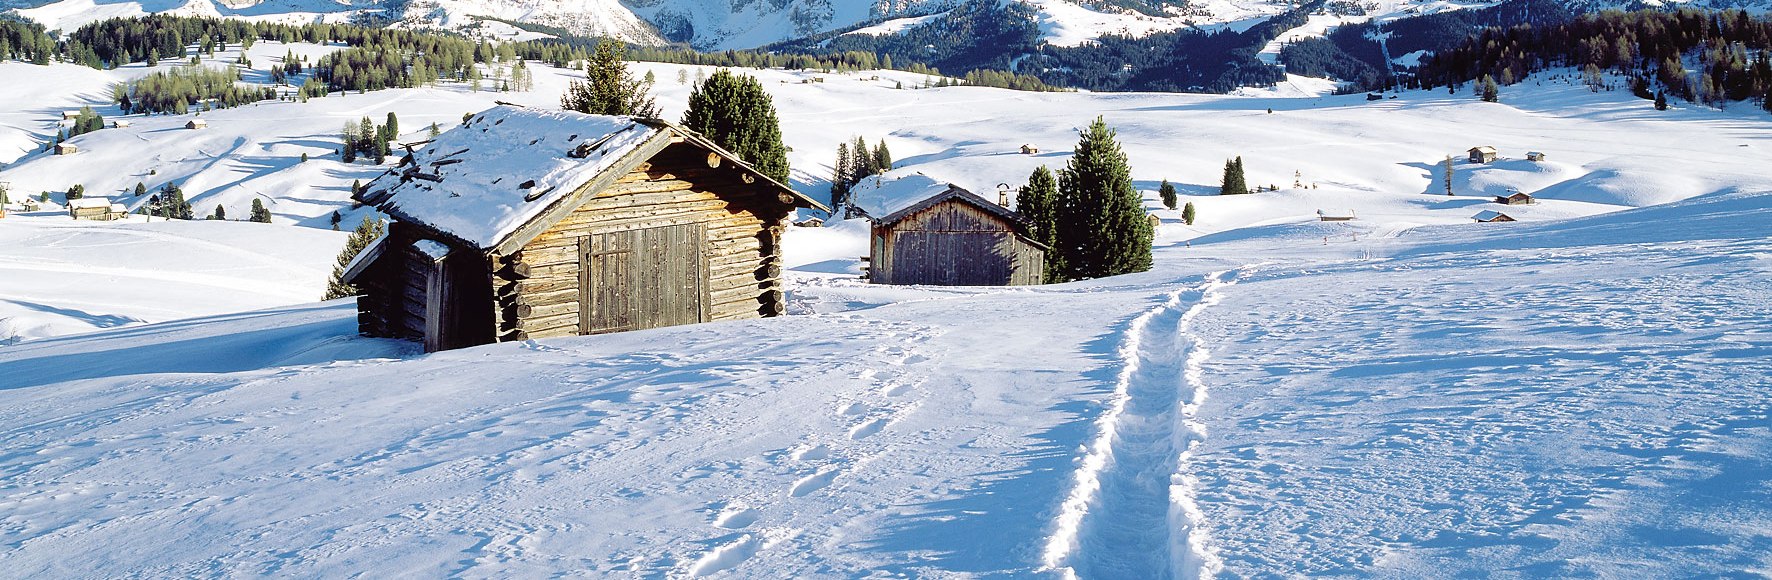 Winter auf der Seiser Alm, Dolomiten, Italien